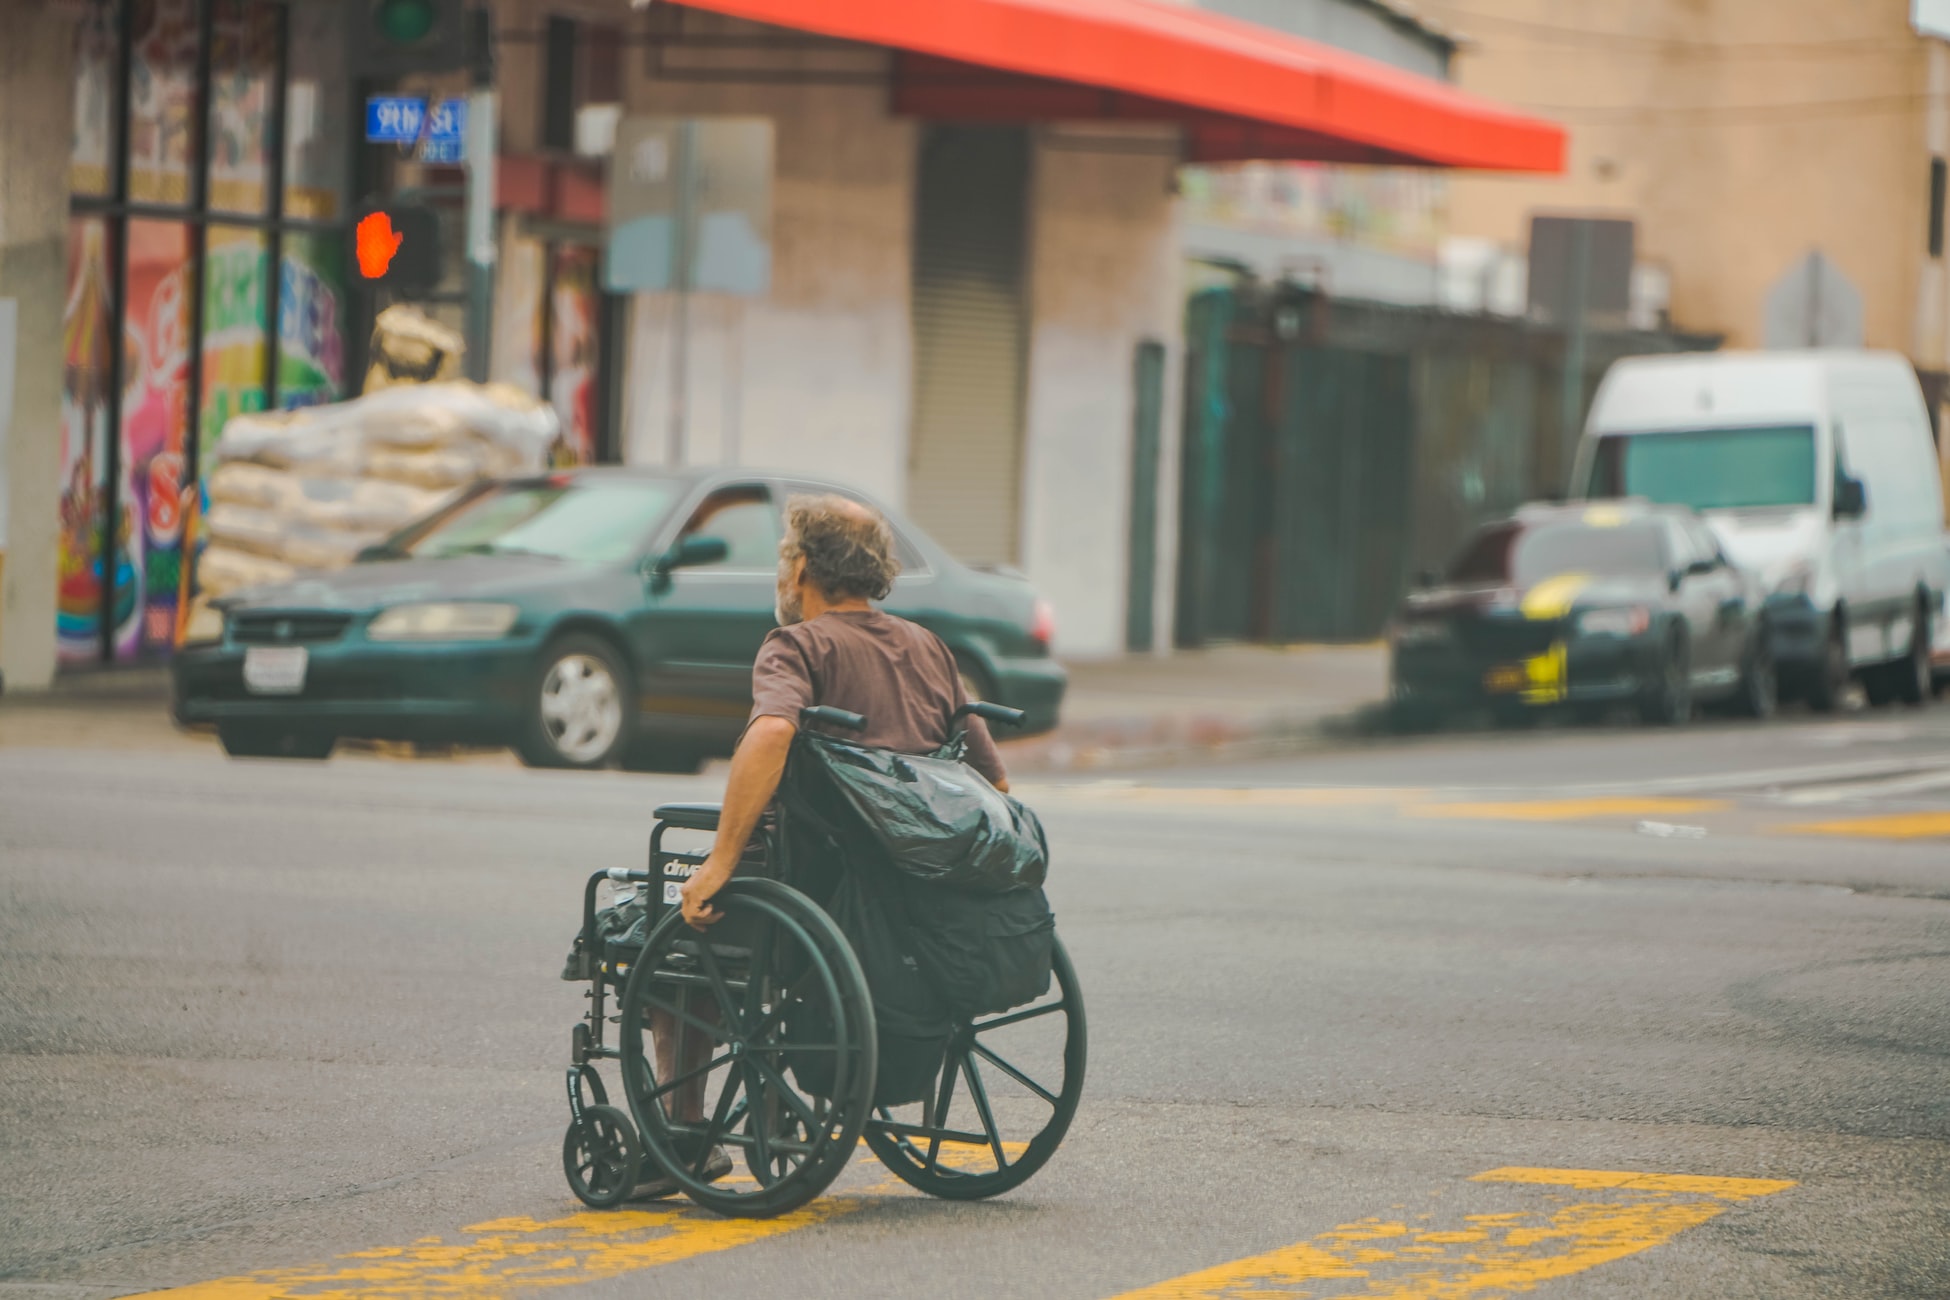 Per la società, le persone disabili esistono solo come consumatori